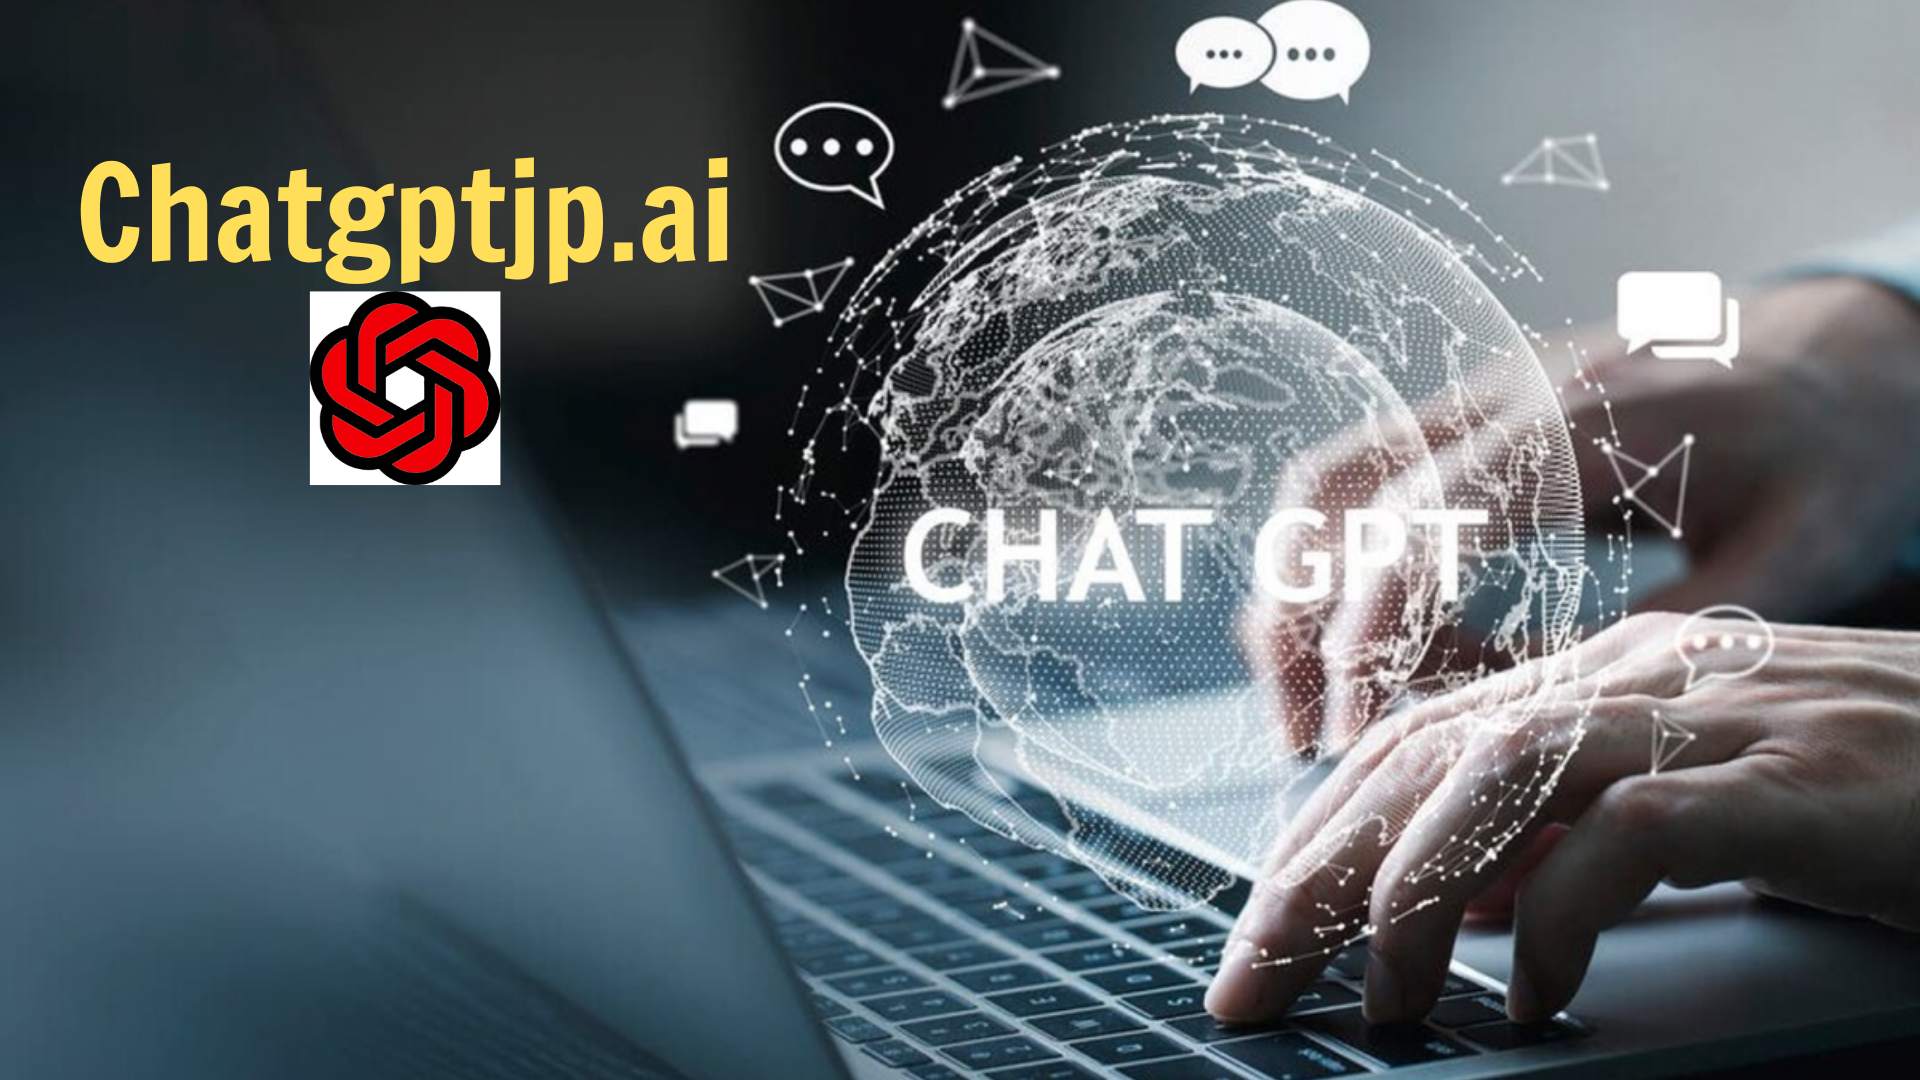 ChatGPTを使用したリーガルテックアプリケーションが行政の視野に入る